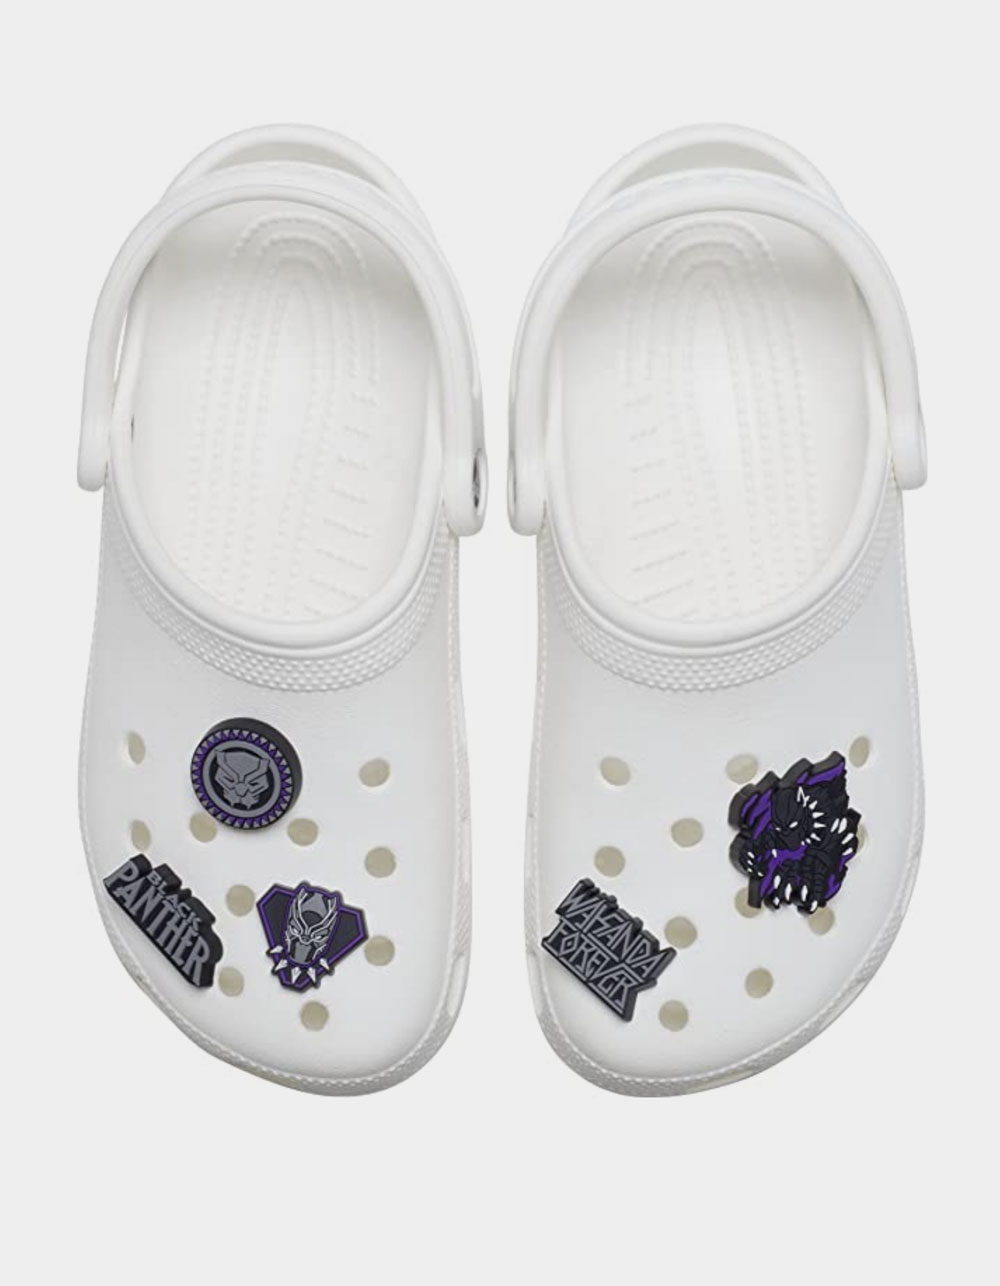 White & Black Crocs Jibbitz Letter T Shoe Accessories